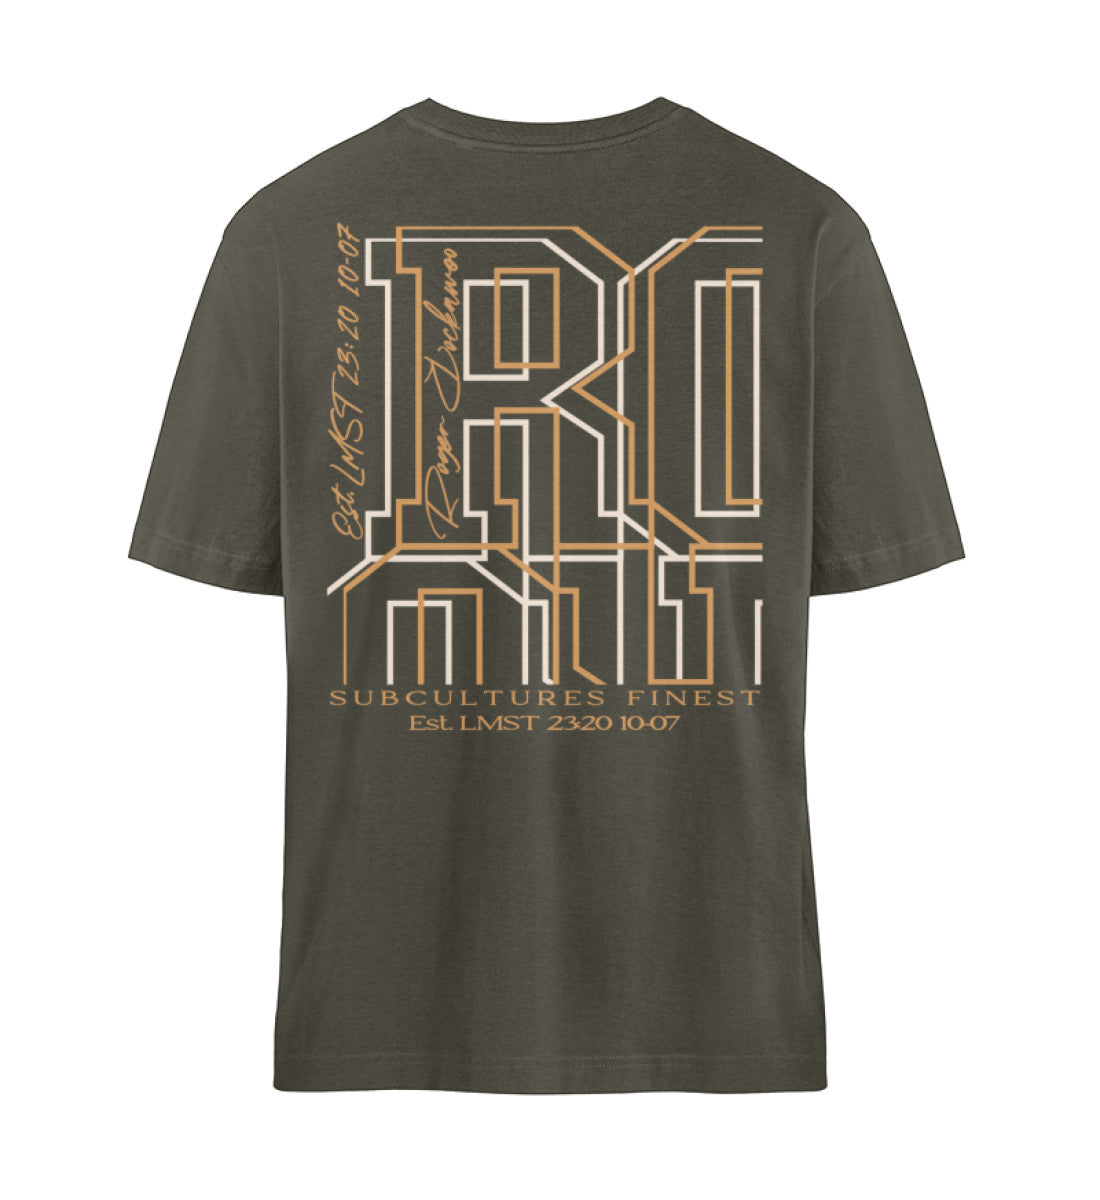 Khaki T-Shirt Unisex Relaxed Fit für Frauen und Männer bedruckt mit dem Design der Roger Rockawoo Kollektion Bitcoin be your own bank